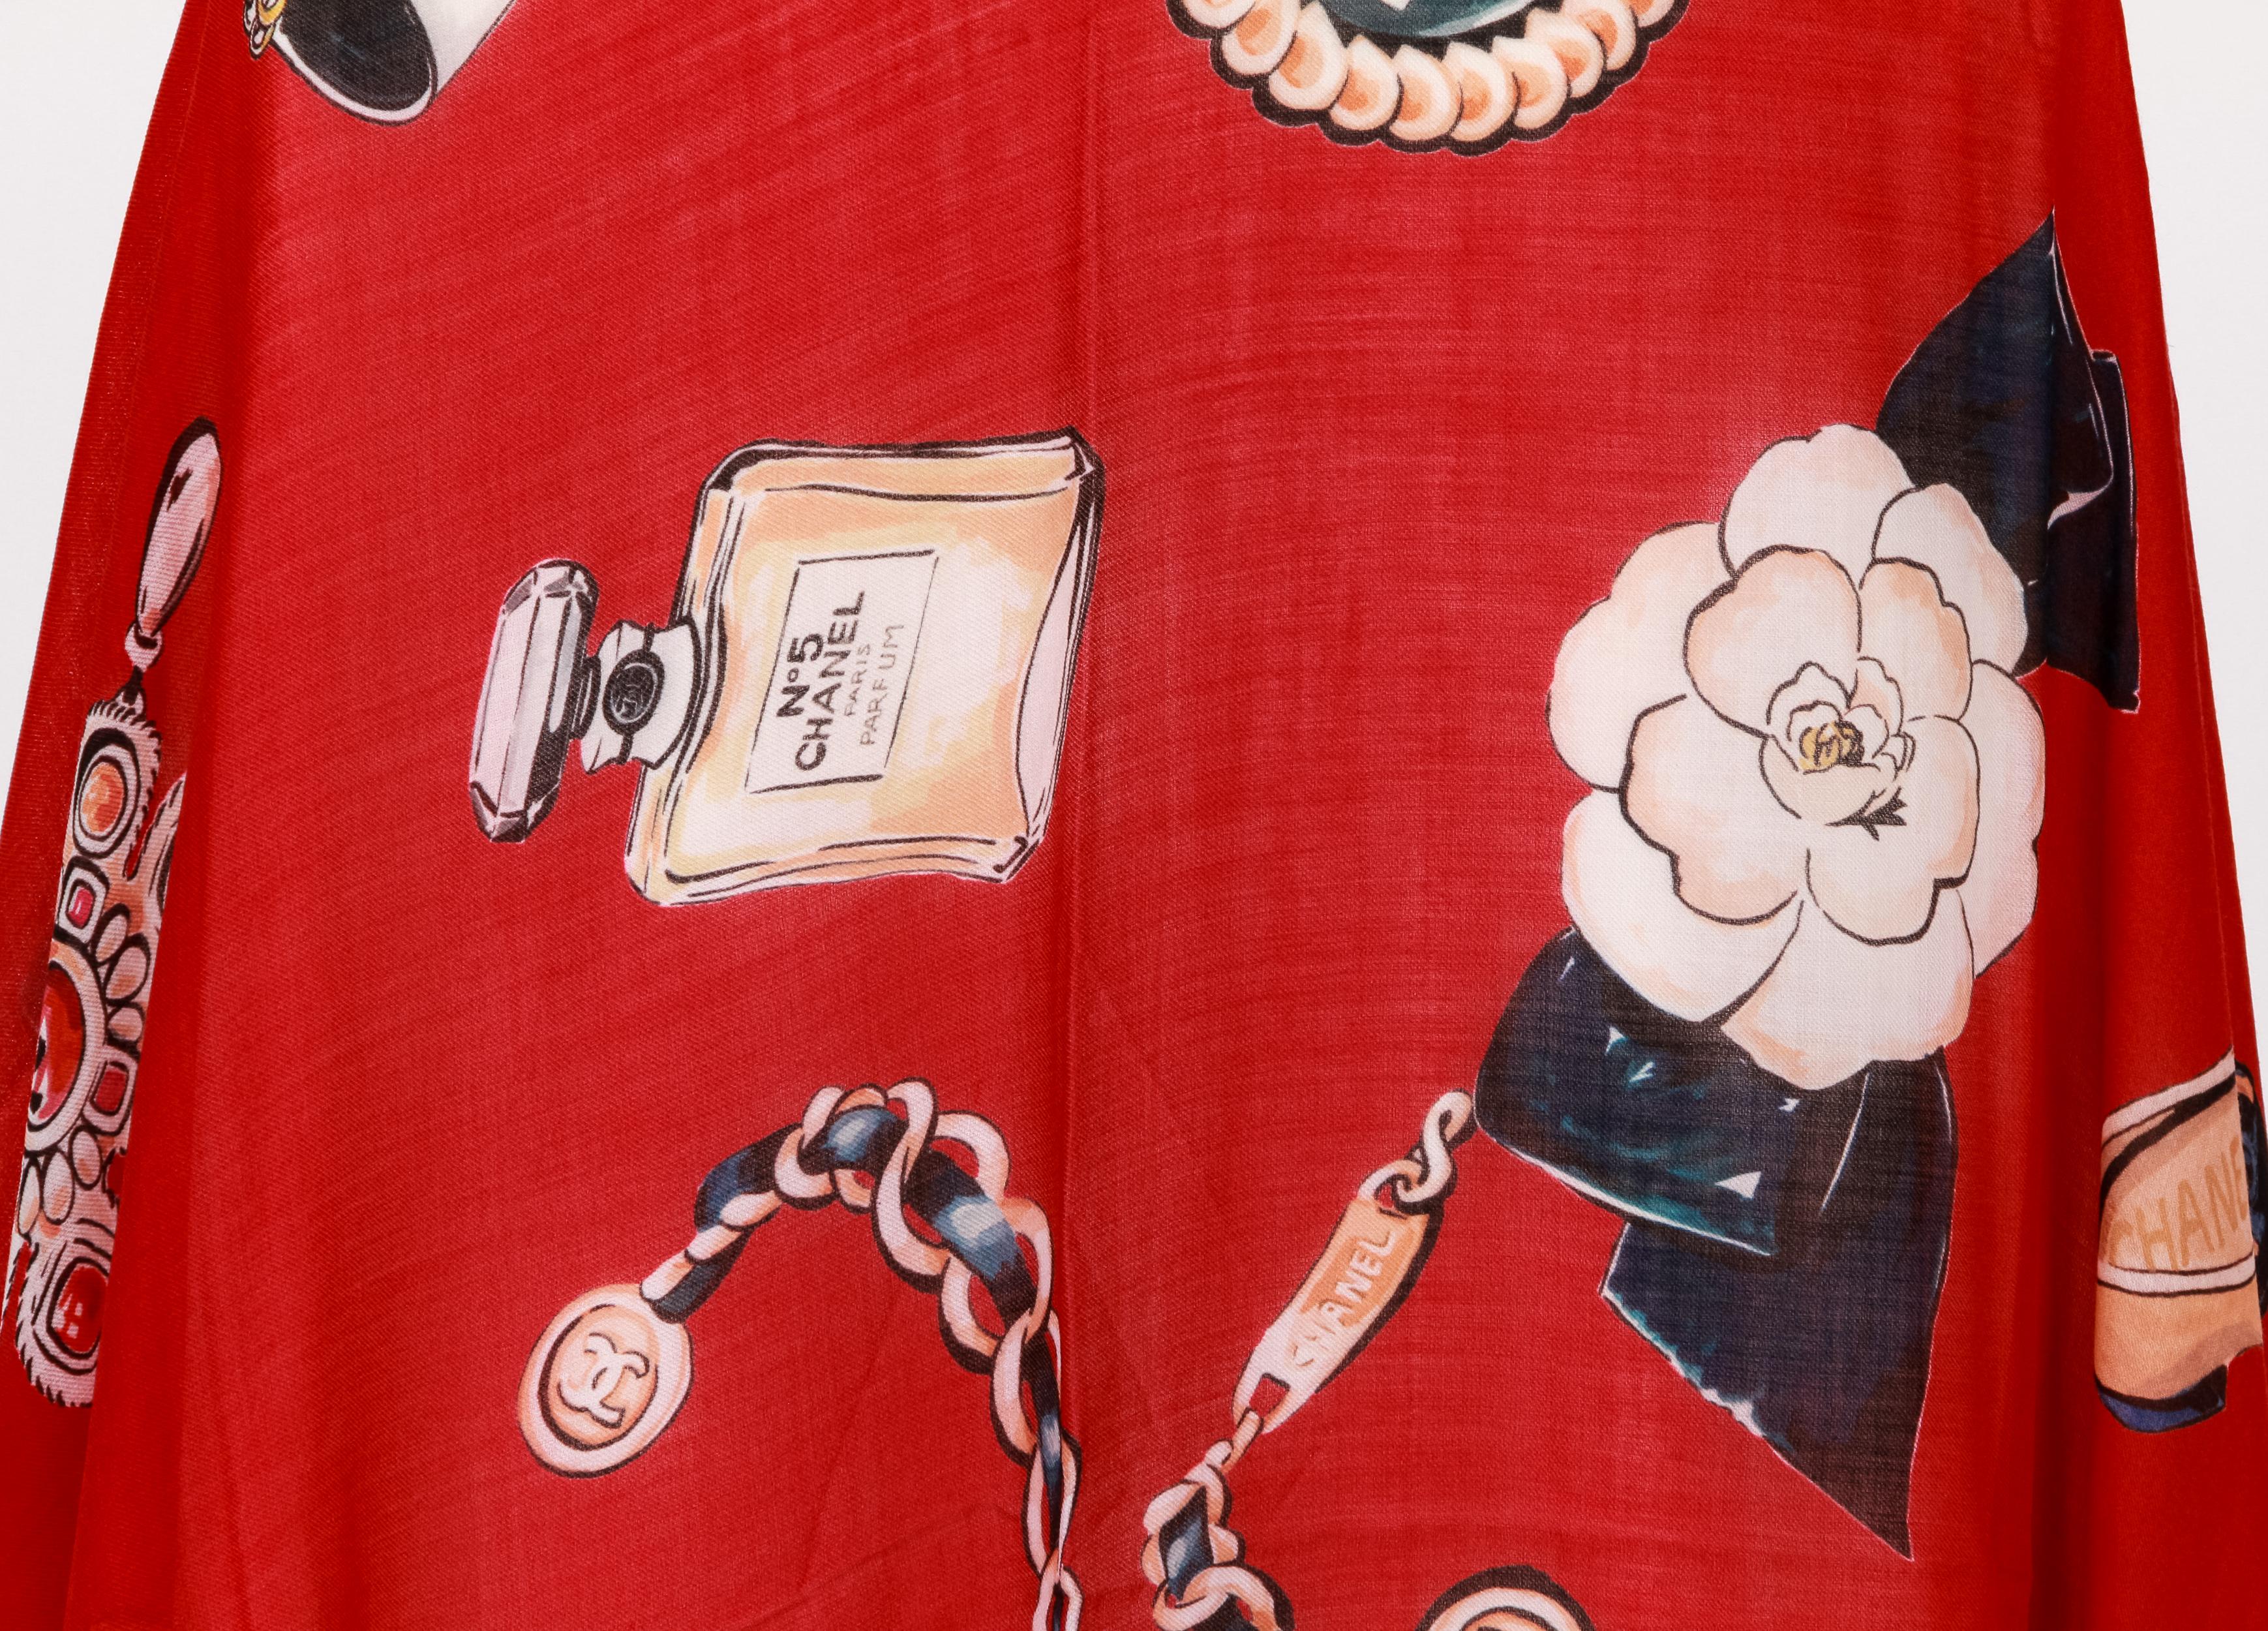 Châle gripoix XL en cachemire rouge et soie mélangée de Chanel, icônes, 74 